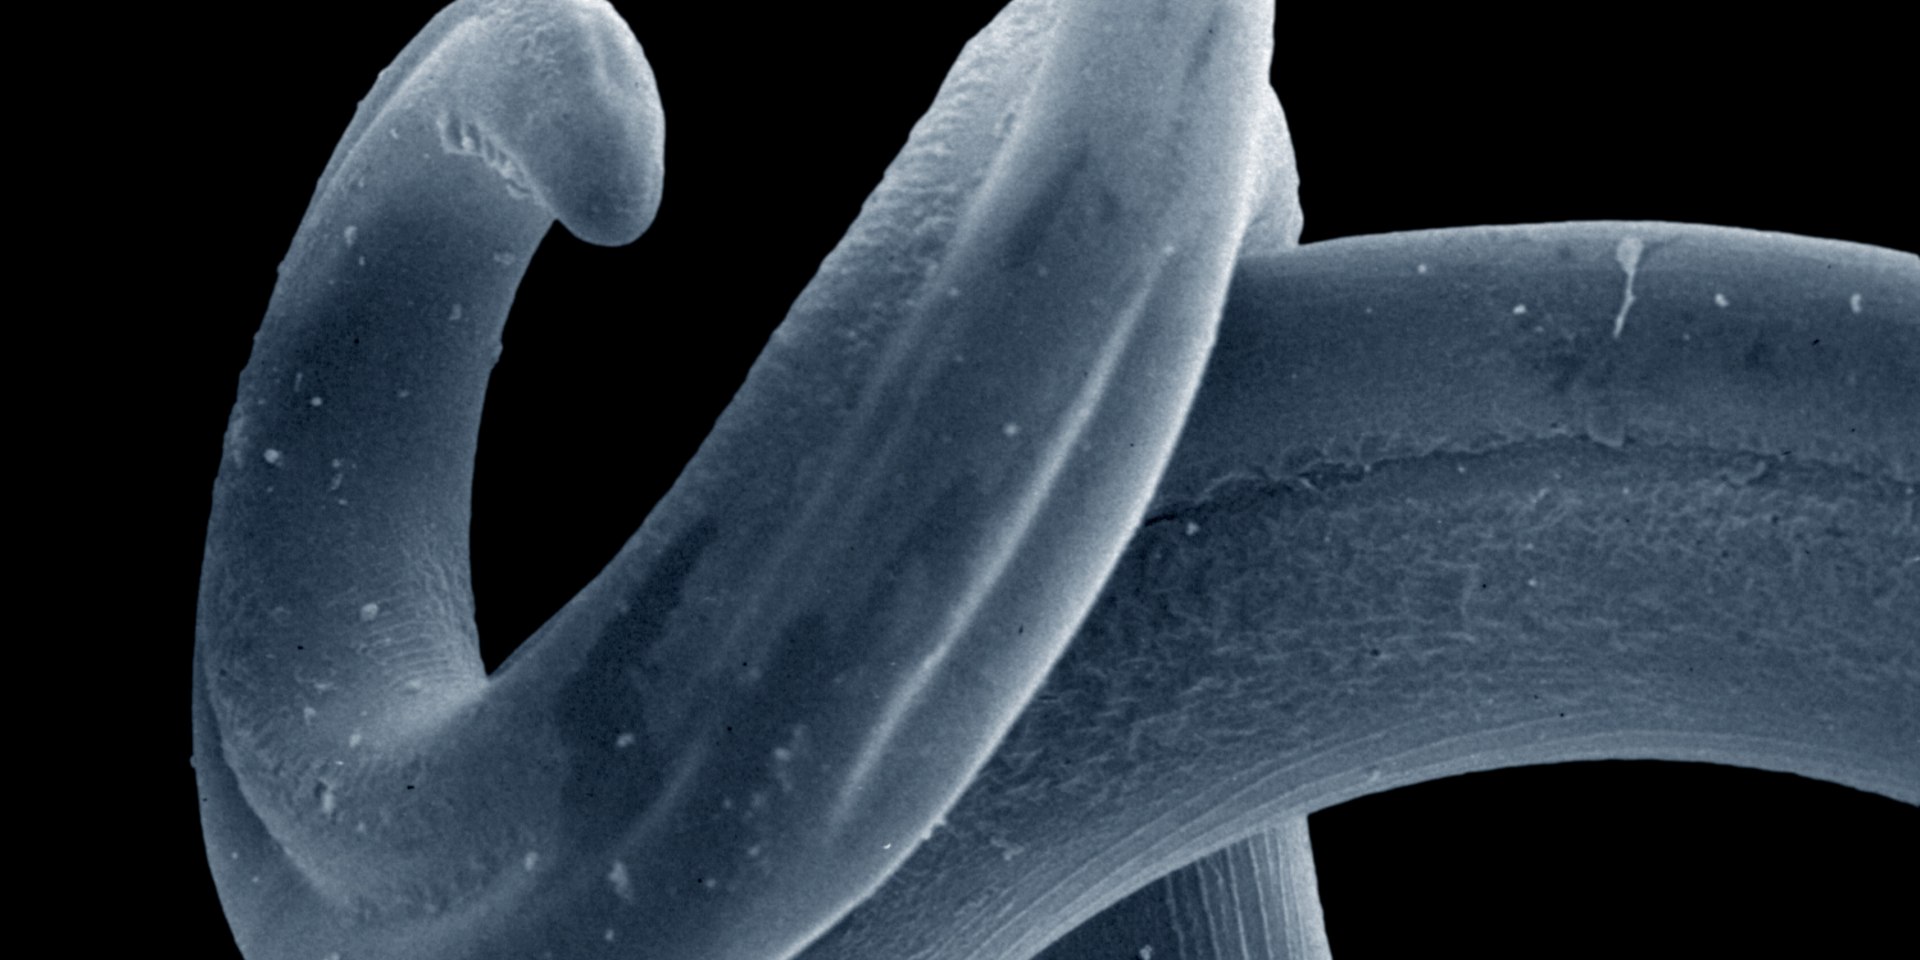 Stechmücken übertragen den Herzwurm (Dirofilaria immitis) auf Hunde., © Prof. Dr. H. Mehlhorn, Heinr Heine Universit Düsseldorf